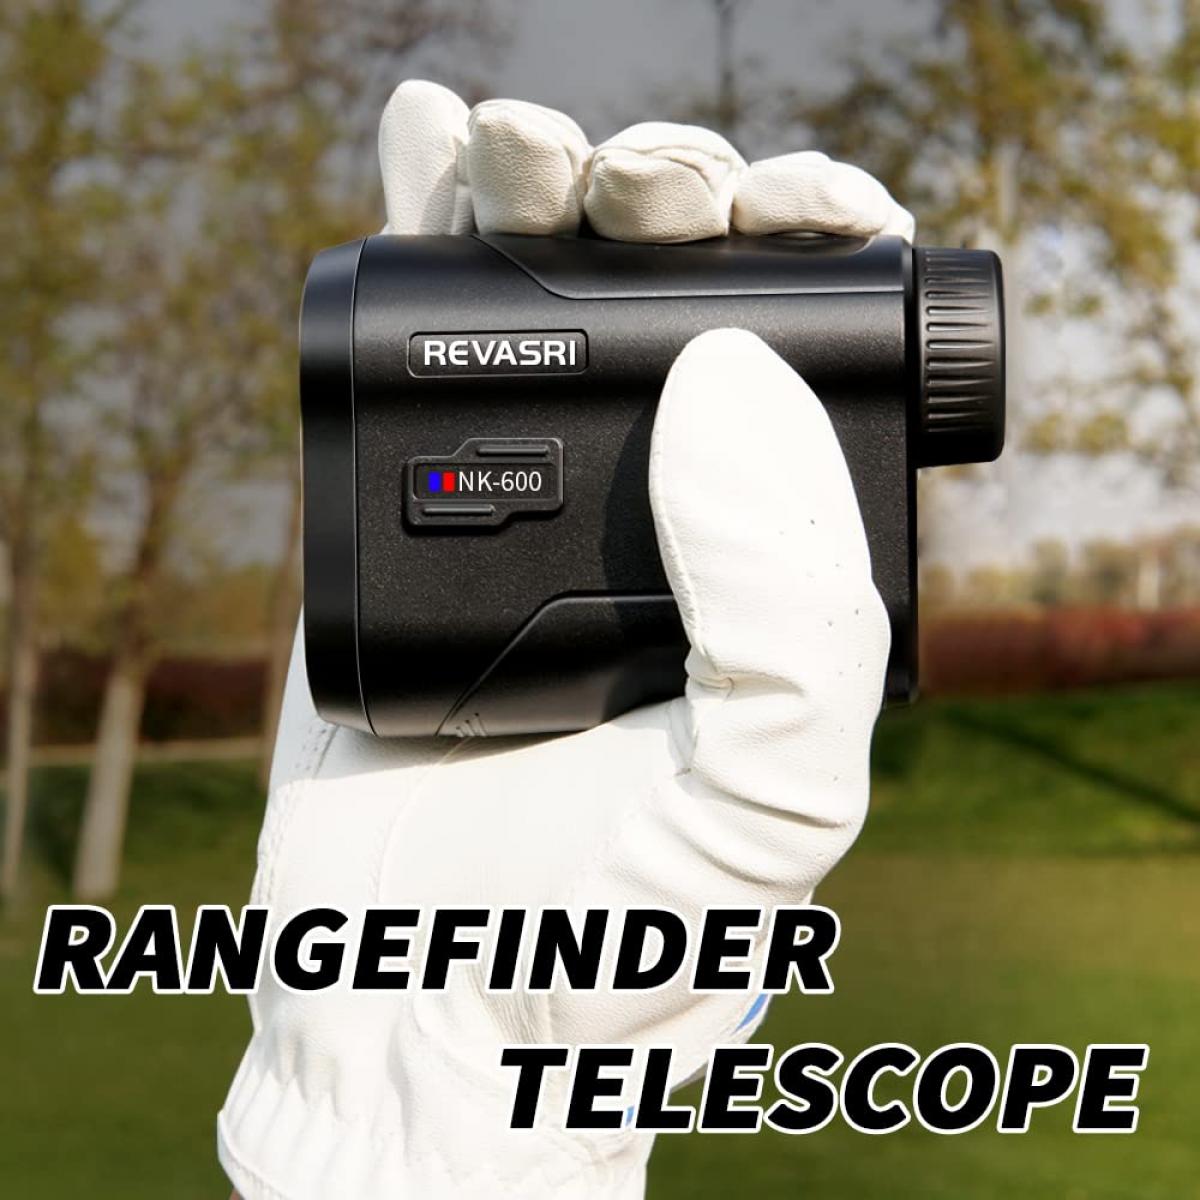 Buscador de rango telescópico para golf con vibración para fijar la pendiente y la bandera, 600 yardas de medición vertical-horaria de la distancia y la función de escaneo, para la caza y el golf, con una batería recargable